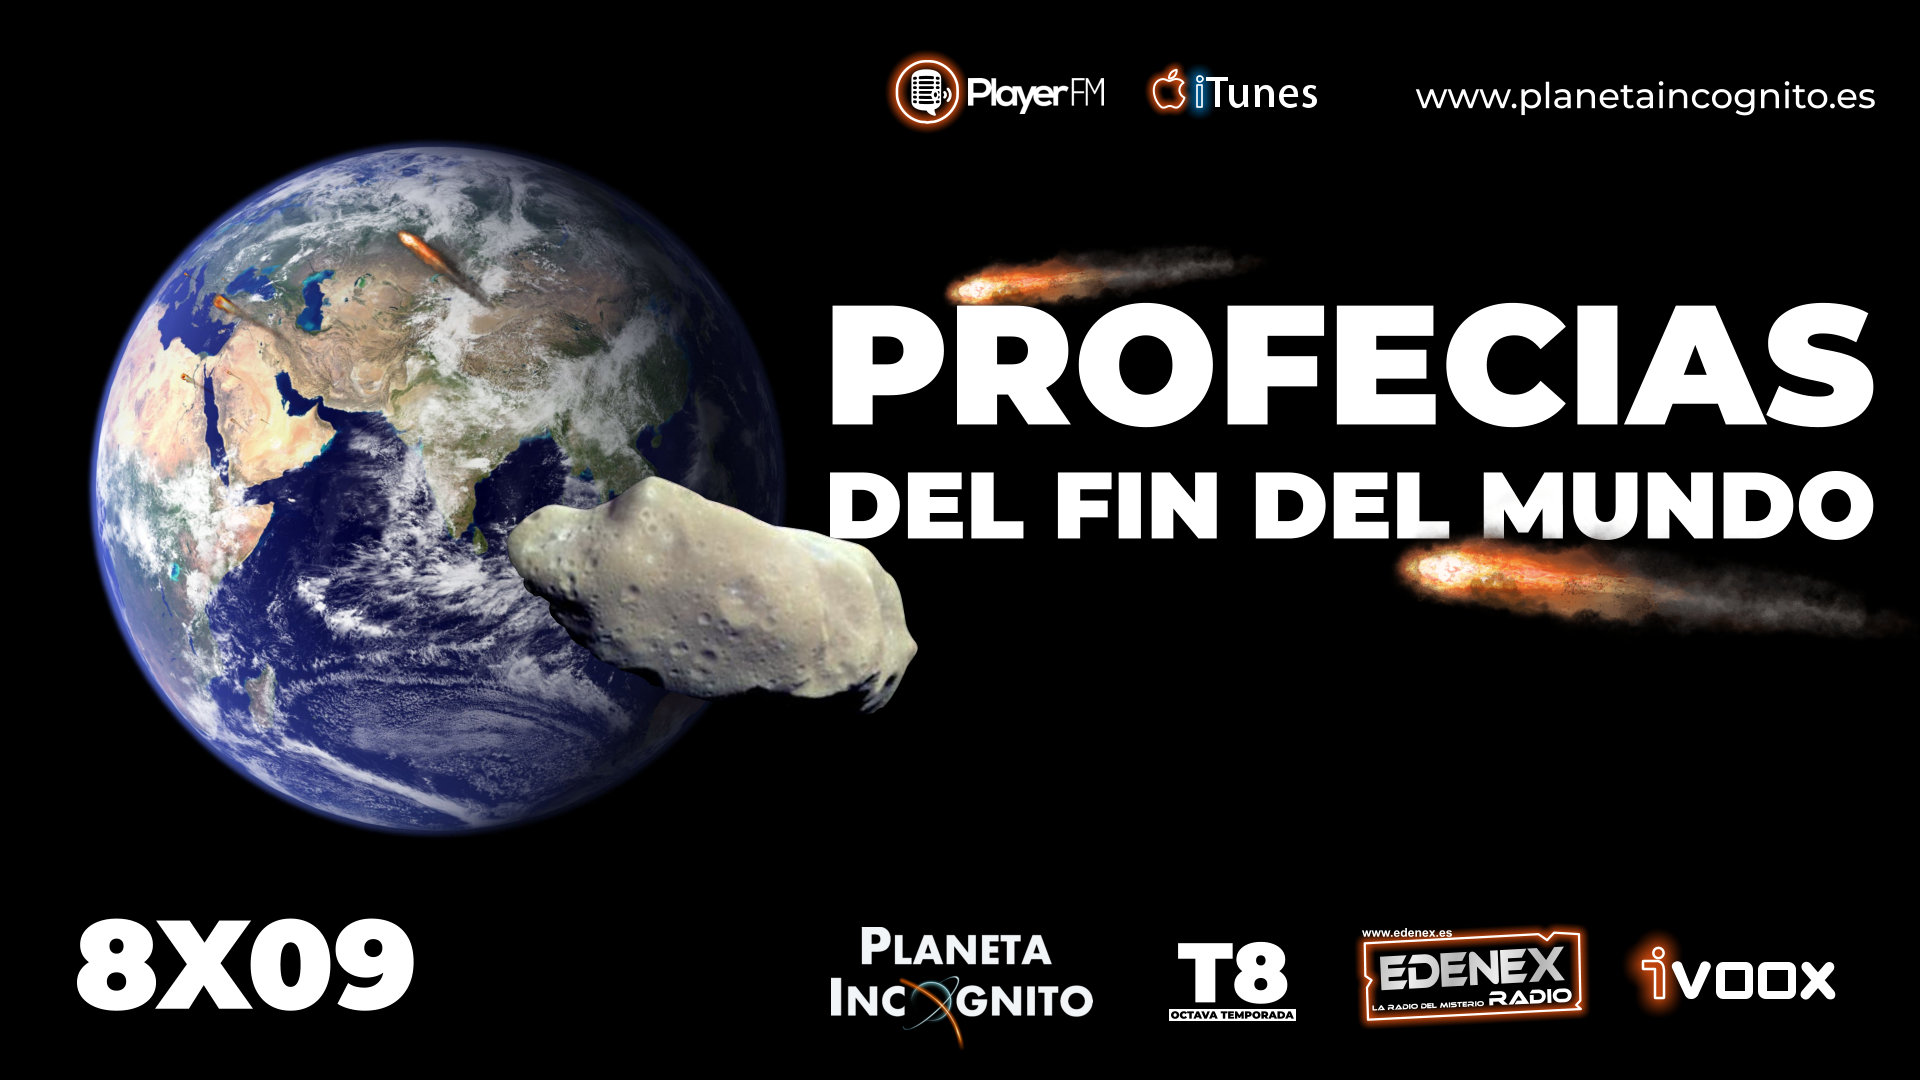 Profecias, Misterio y Ciencia en Planeta Incógnito: Revista web y podcast